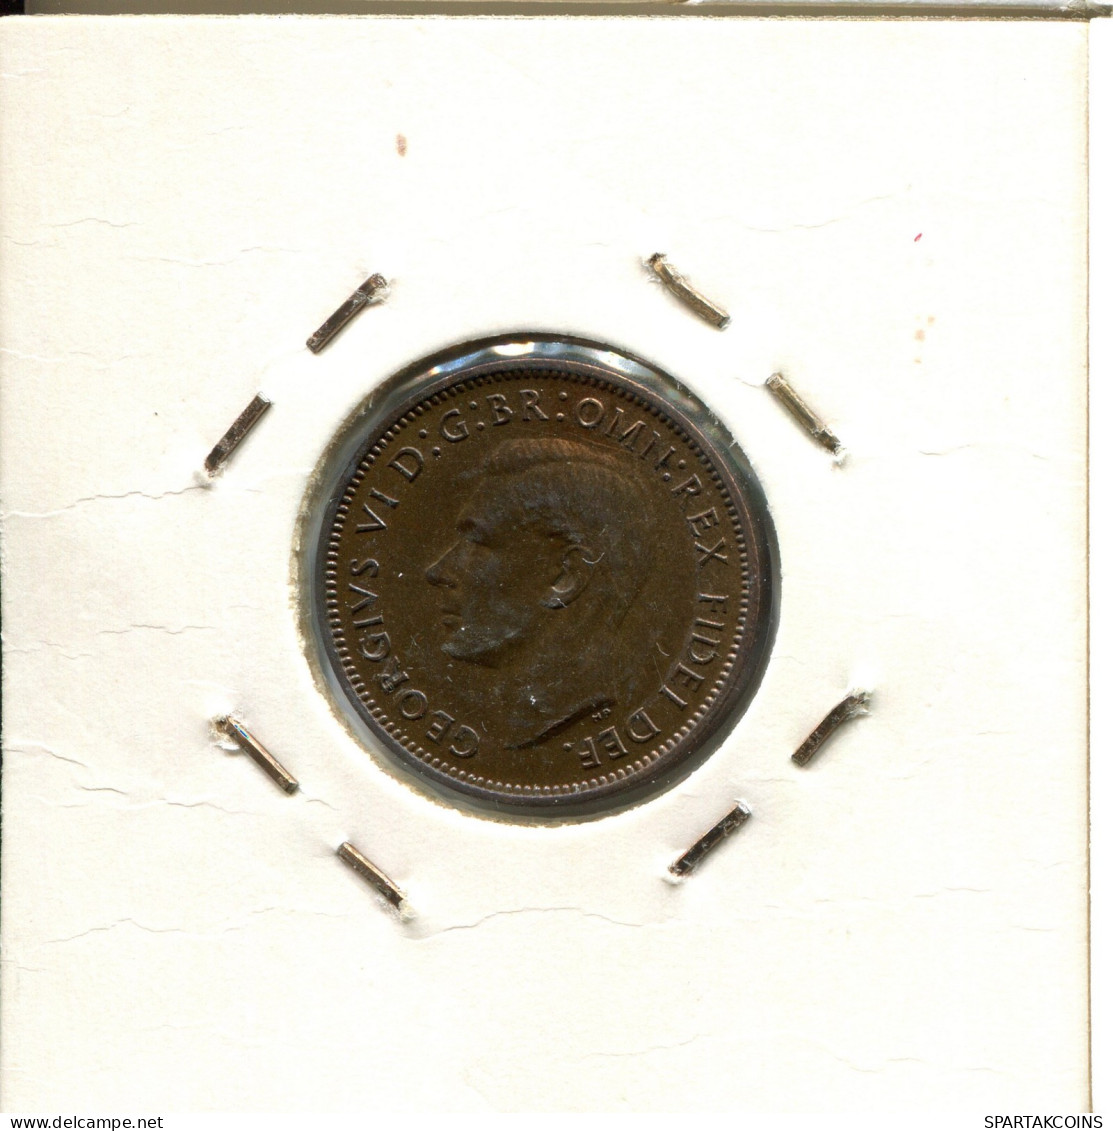 FARTHING 1951 UK GREAT BRITAIN Coin #AW005.U.A - B. 1 Farthing